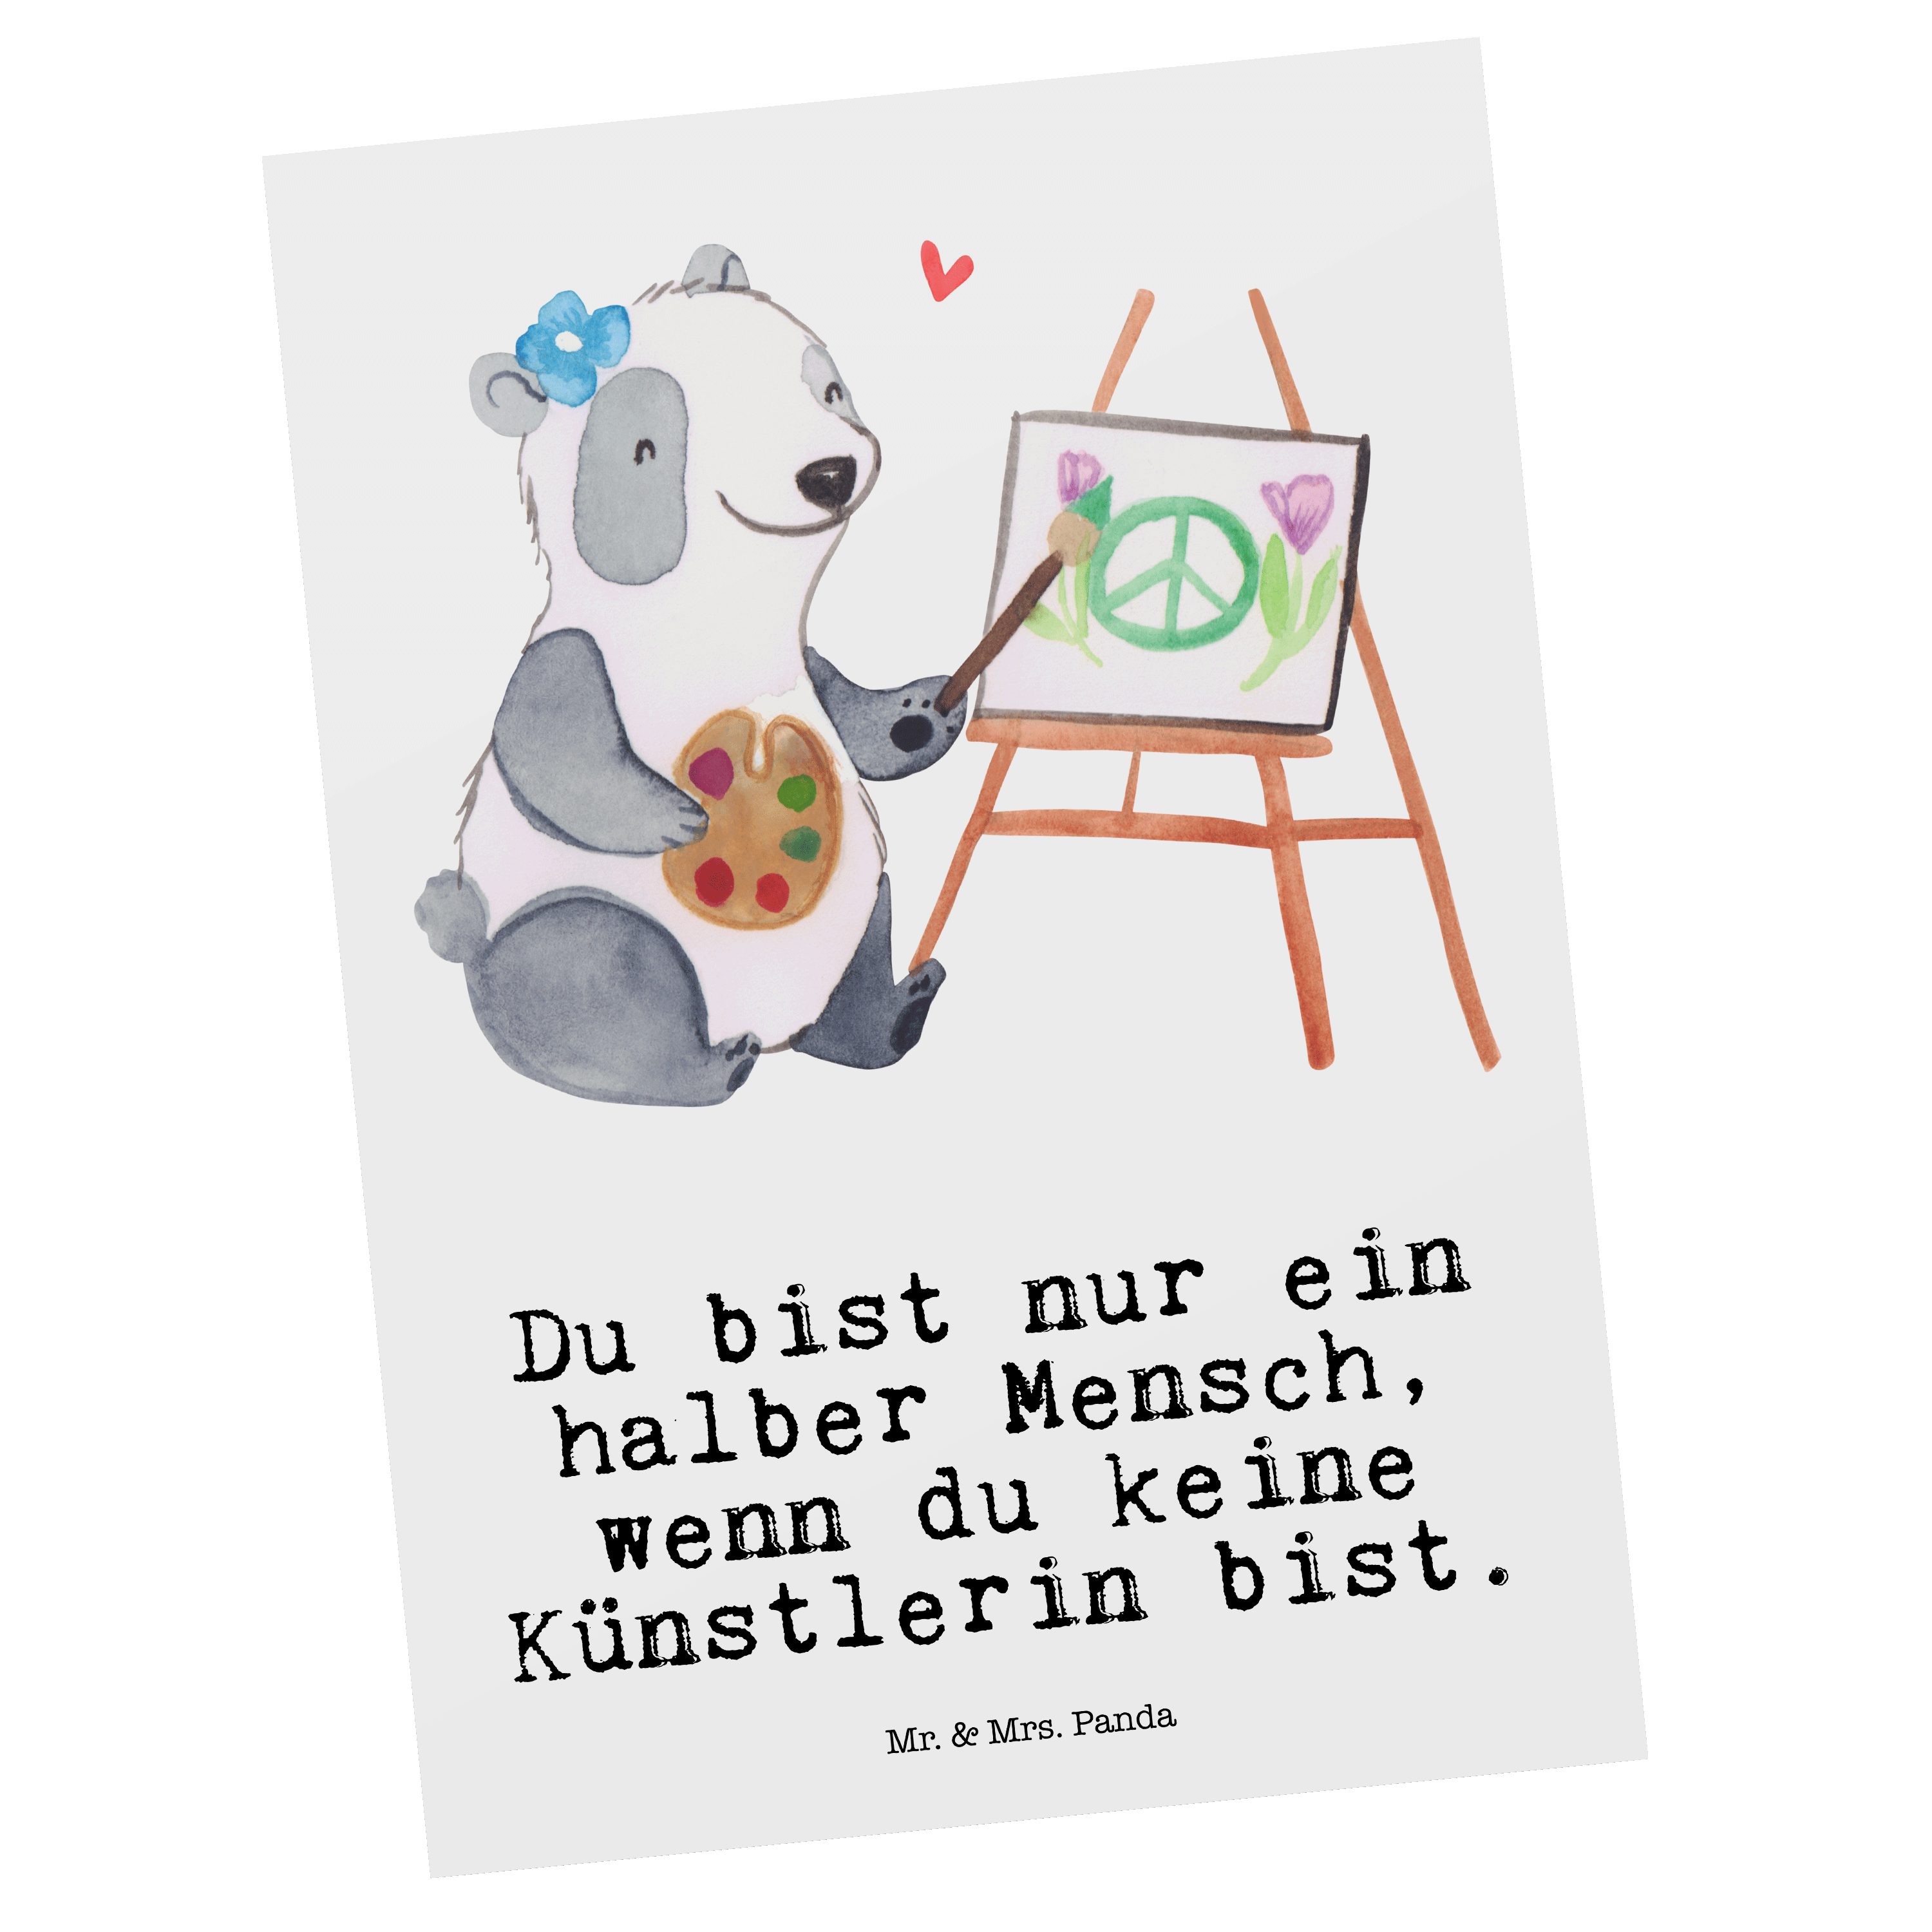 Mr. & Mrs. Panda Postkarte Künstlerin mit Herz - Weiß - Geschenk, Geschenkkarte, Acrylfarben, Re